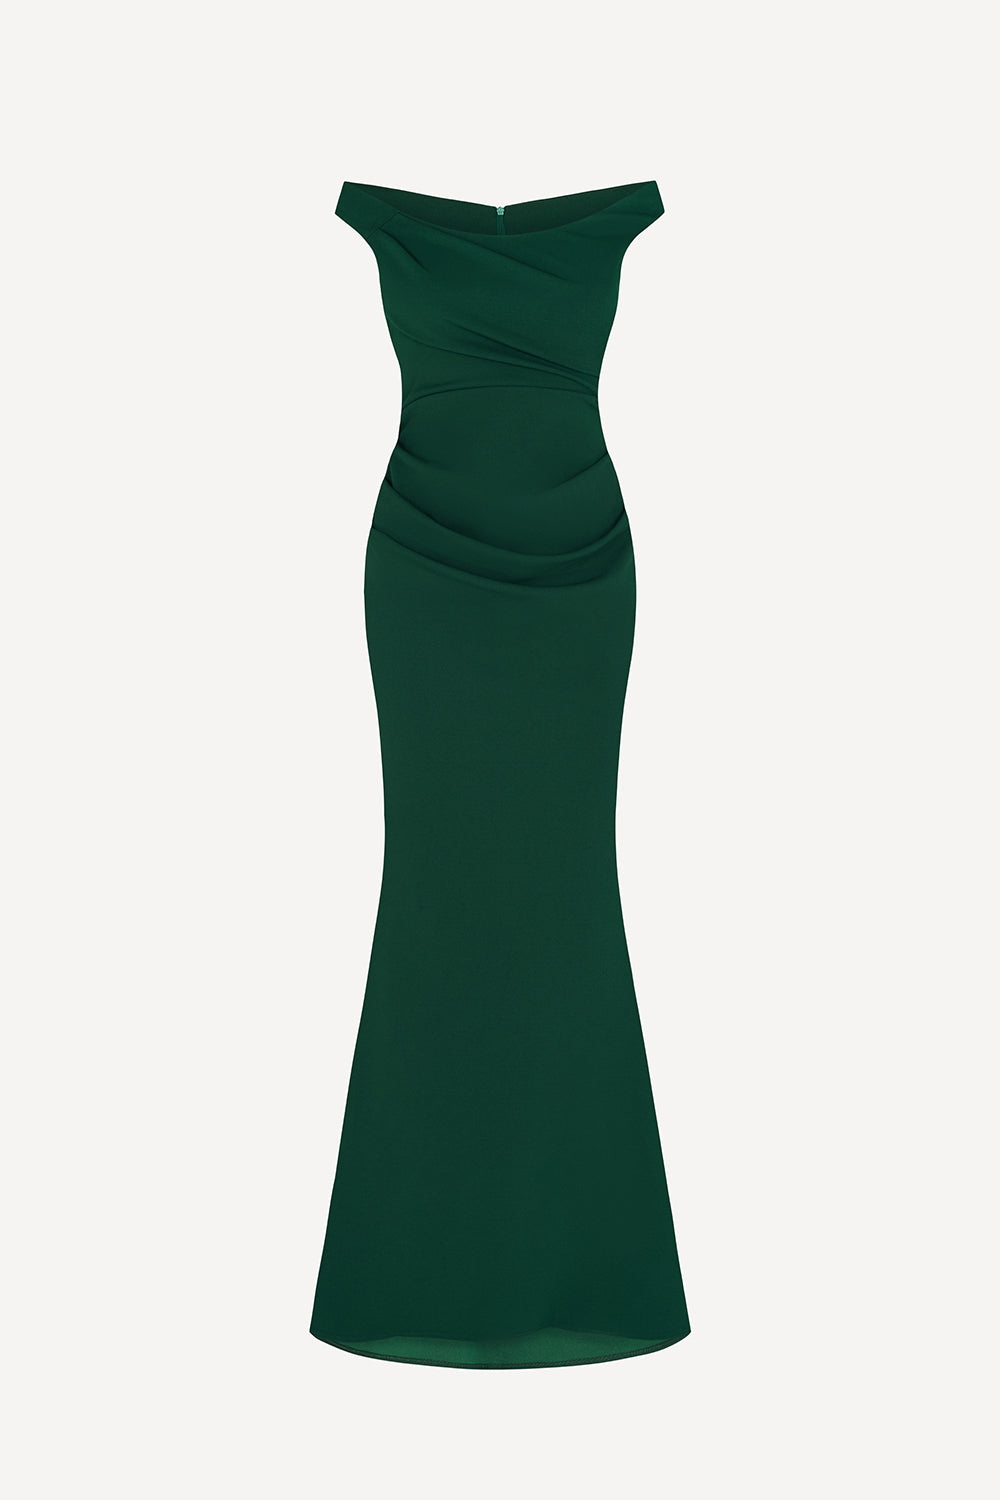 Bella maxi dress in emerald